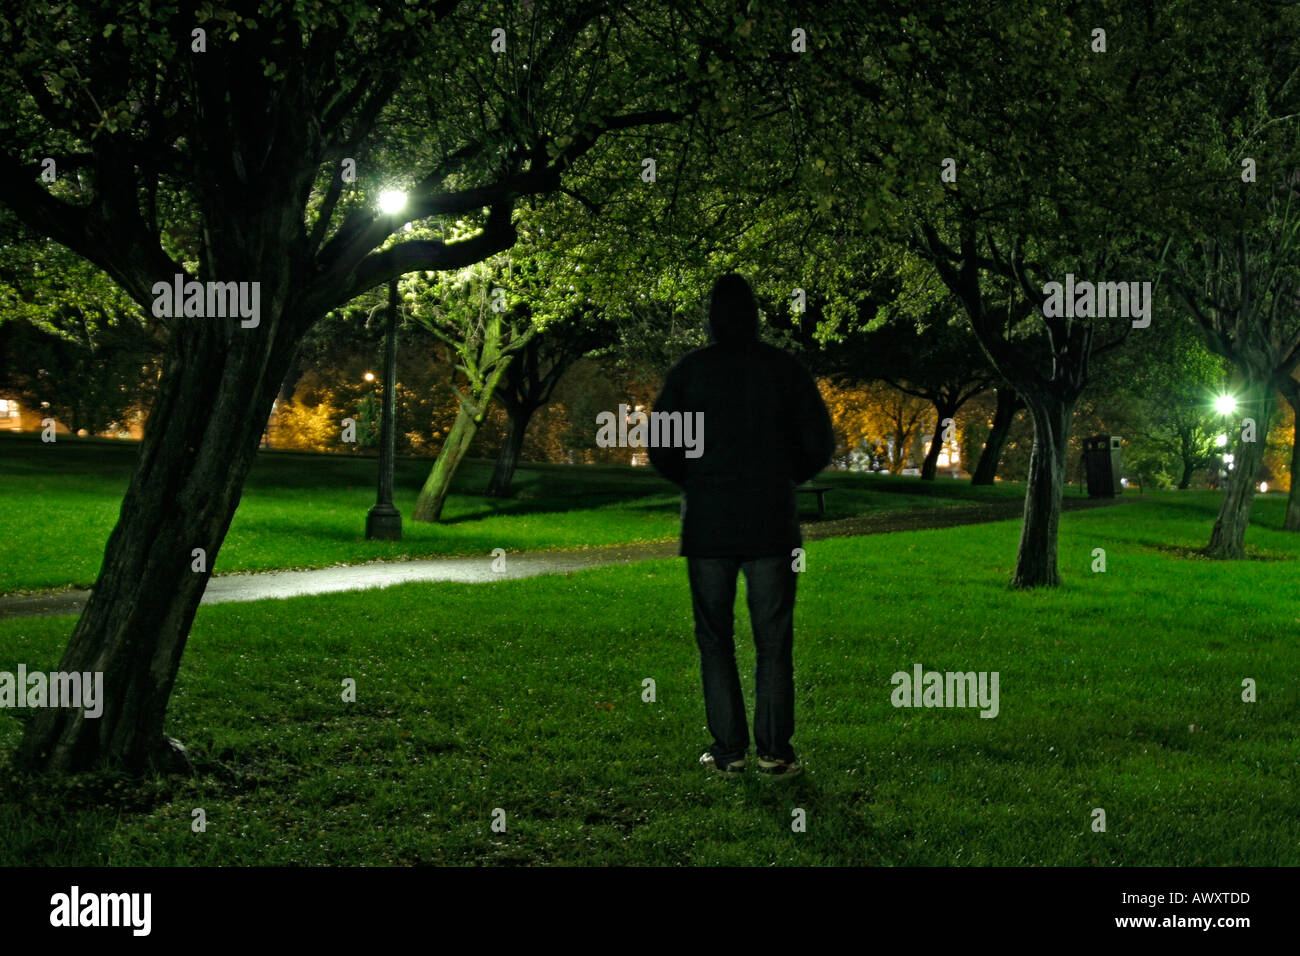 Mann stand unter einem Baum in einem Park in der Nacht in Richtung eines Pfads Straßenlampen Stockfoto